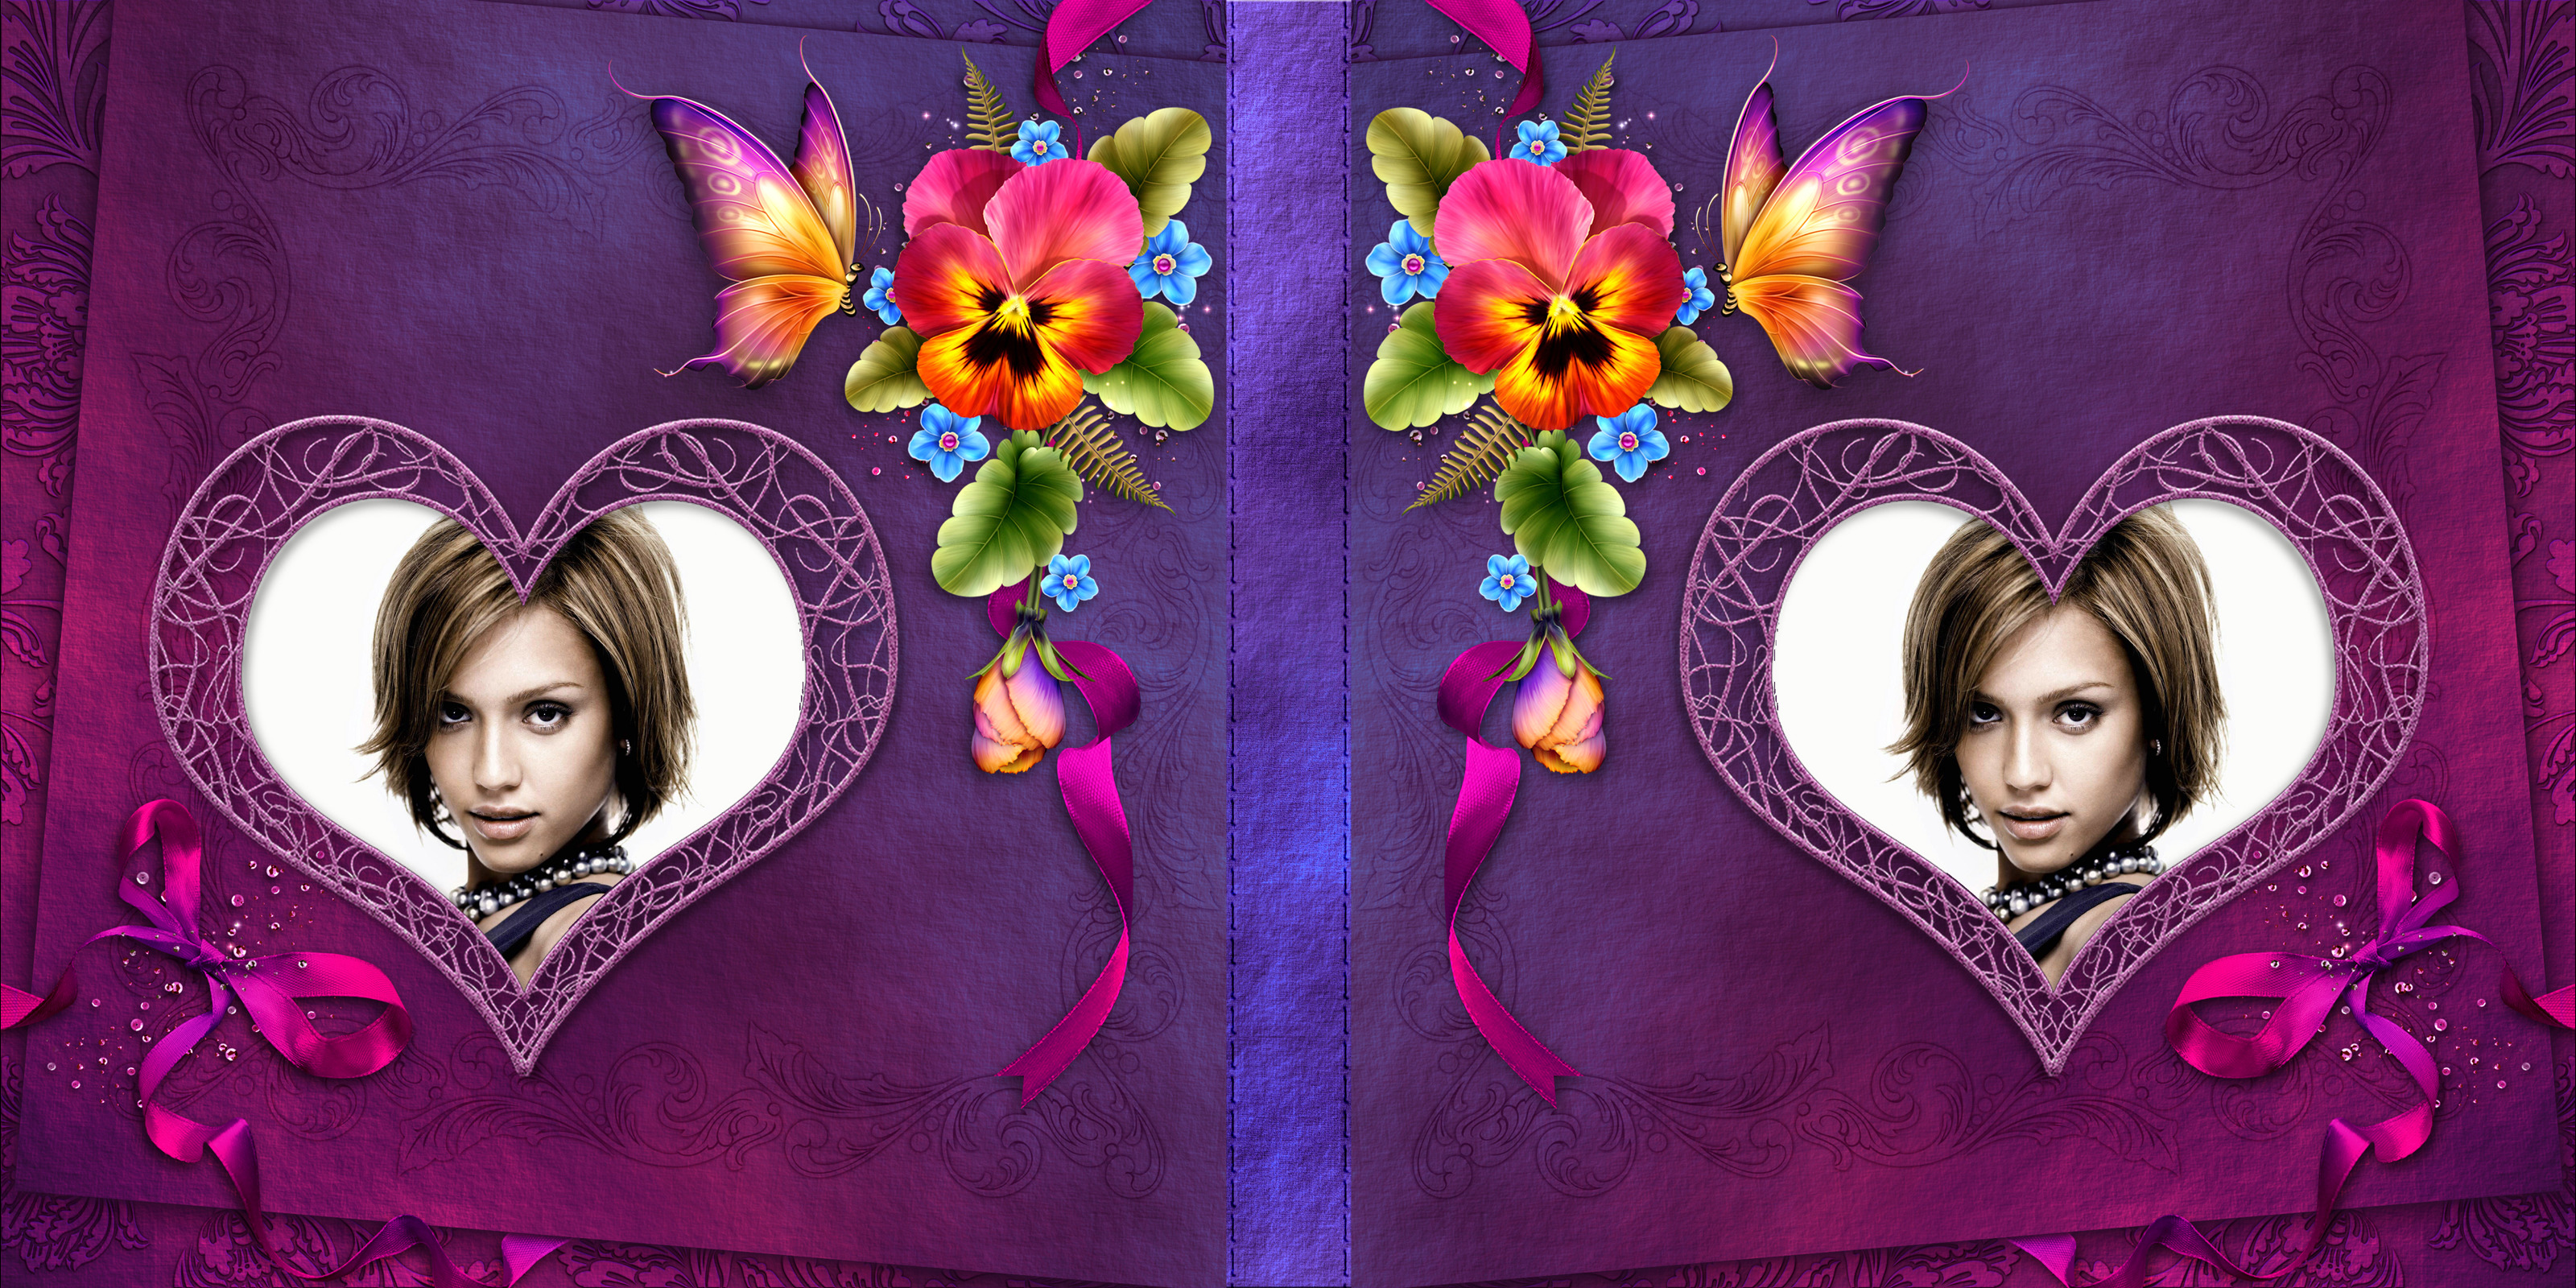 Copertina di libro viola con fiori, cuori e farfalle #4 Fotomontaggio